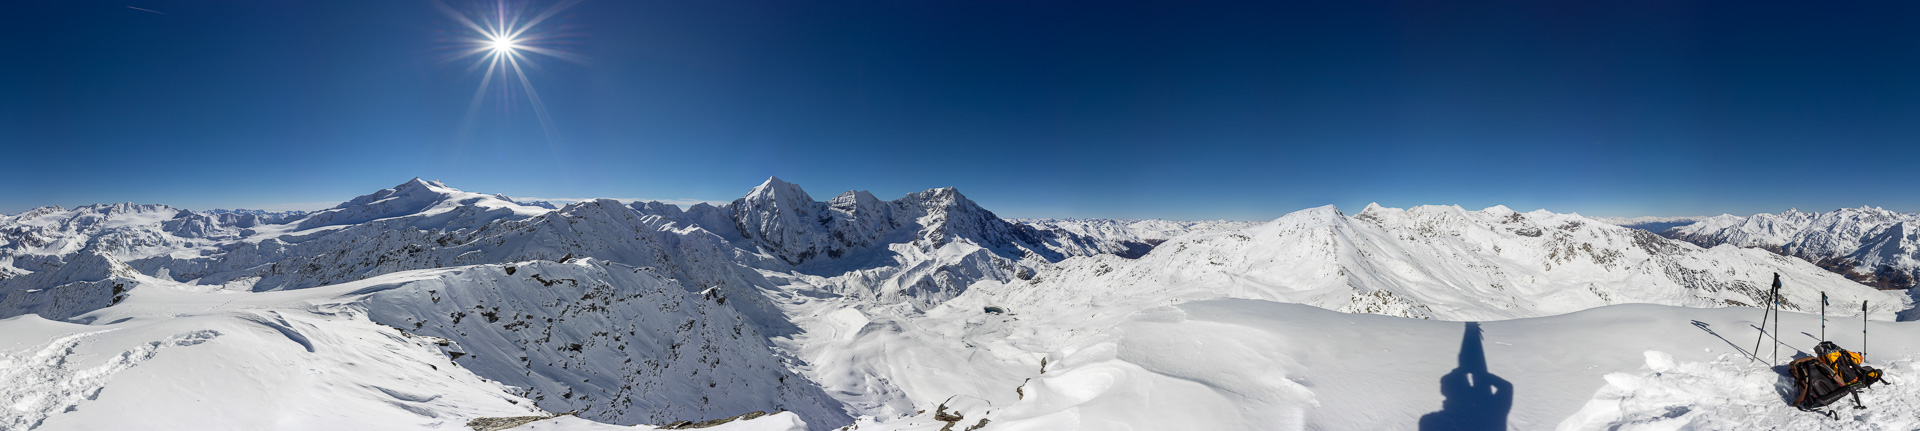 Phantastisches Gipfelpanorama mit Blick bis zu den Dolomiten. Aber es hat sehr viel Schnee für Mitte Oktober!